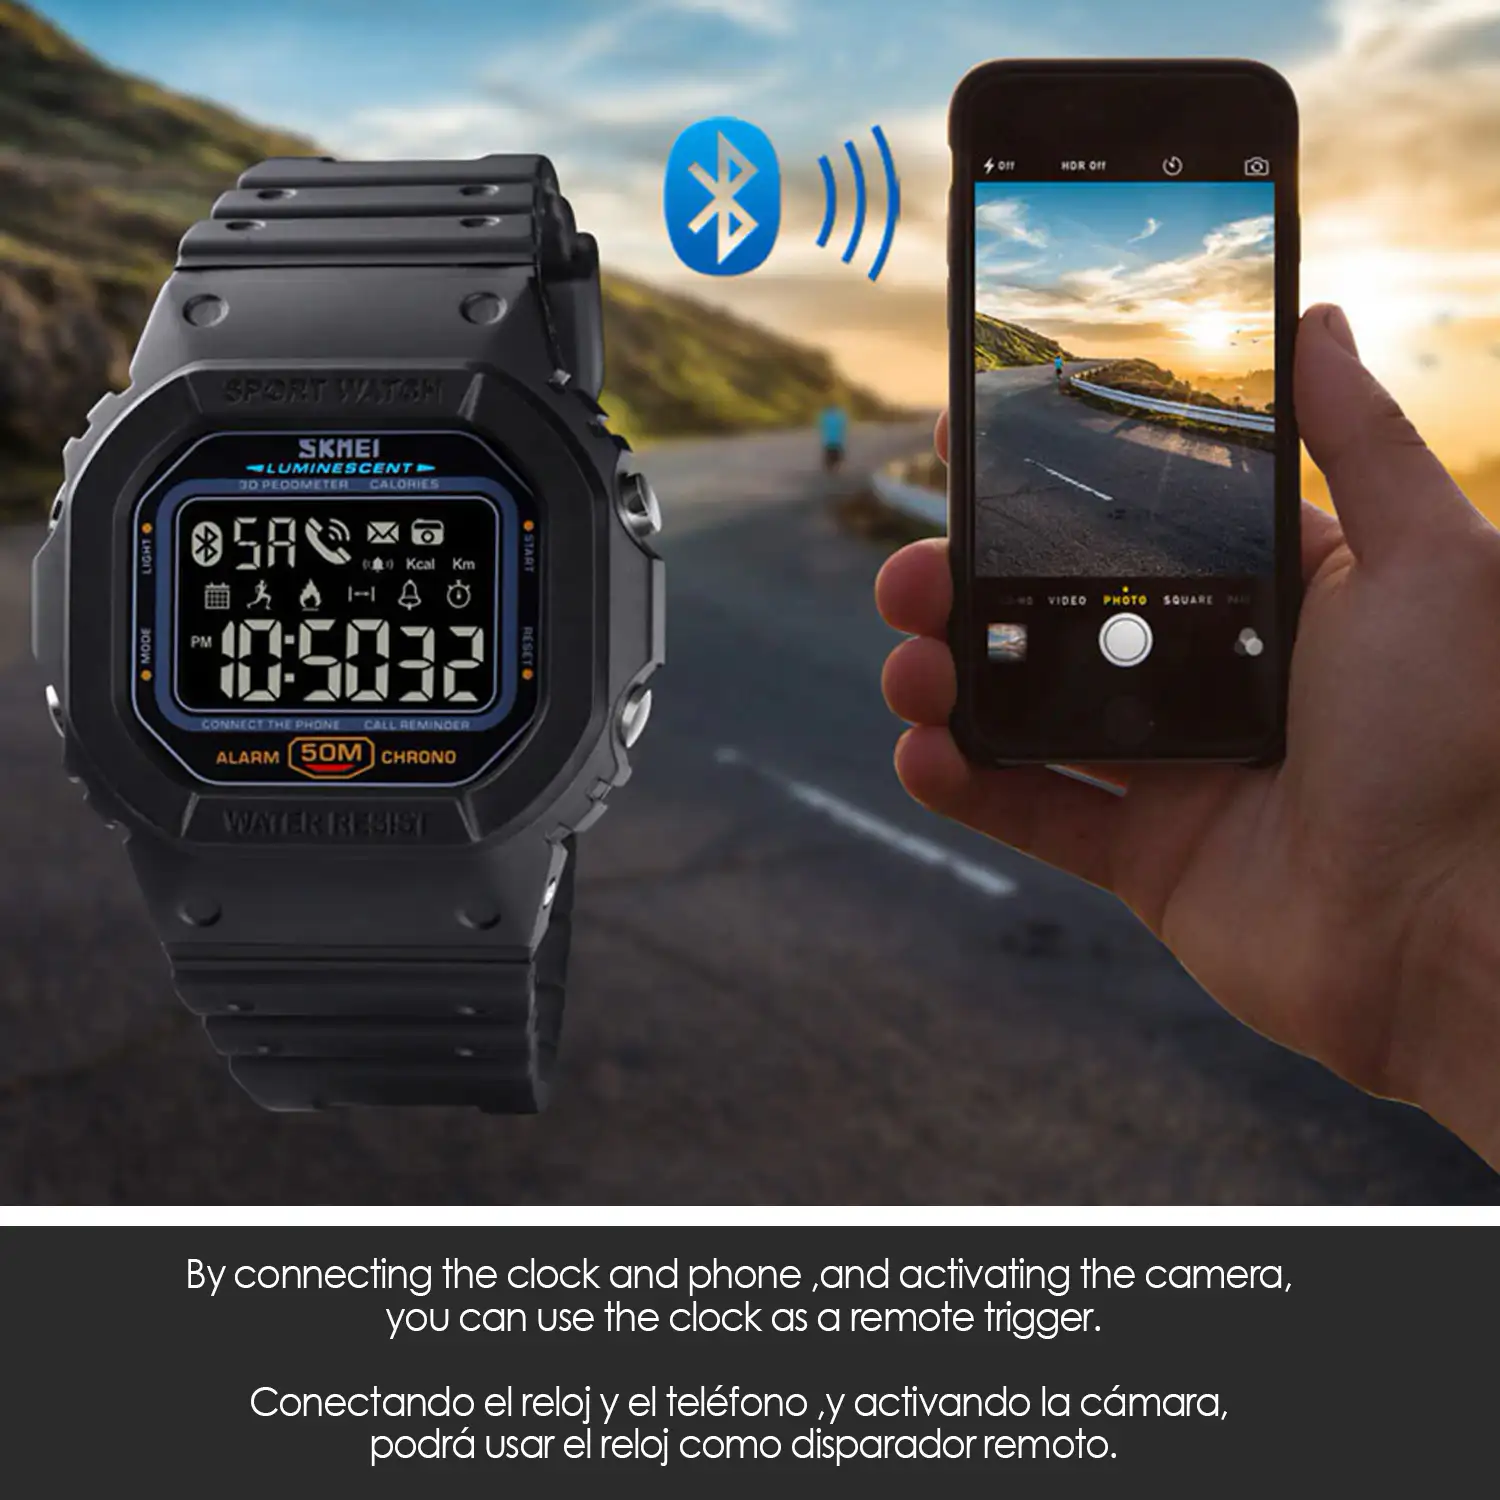 Smartwatch 1629 bluetooth diseño clásico con funciones avanzadas